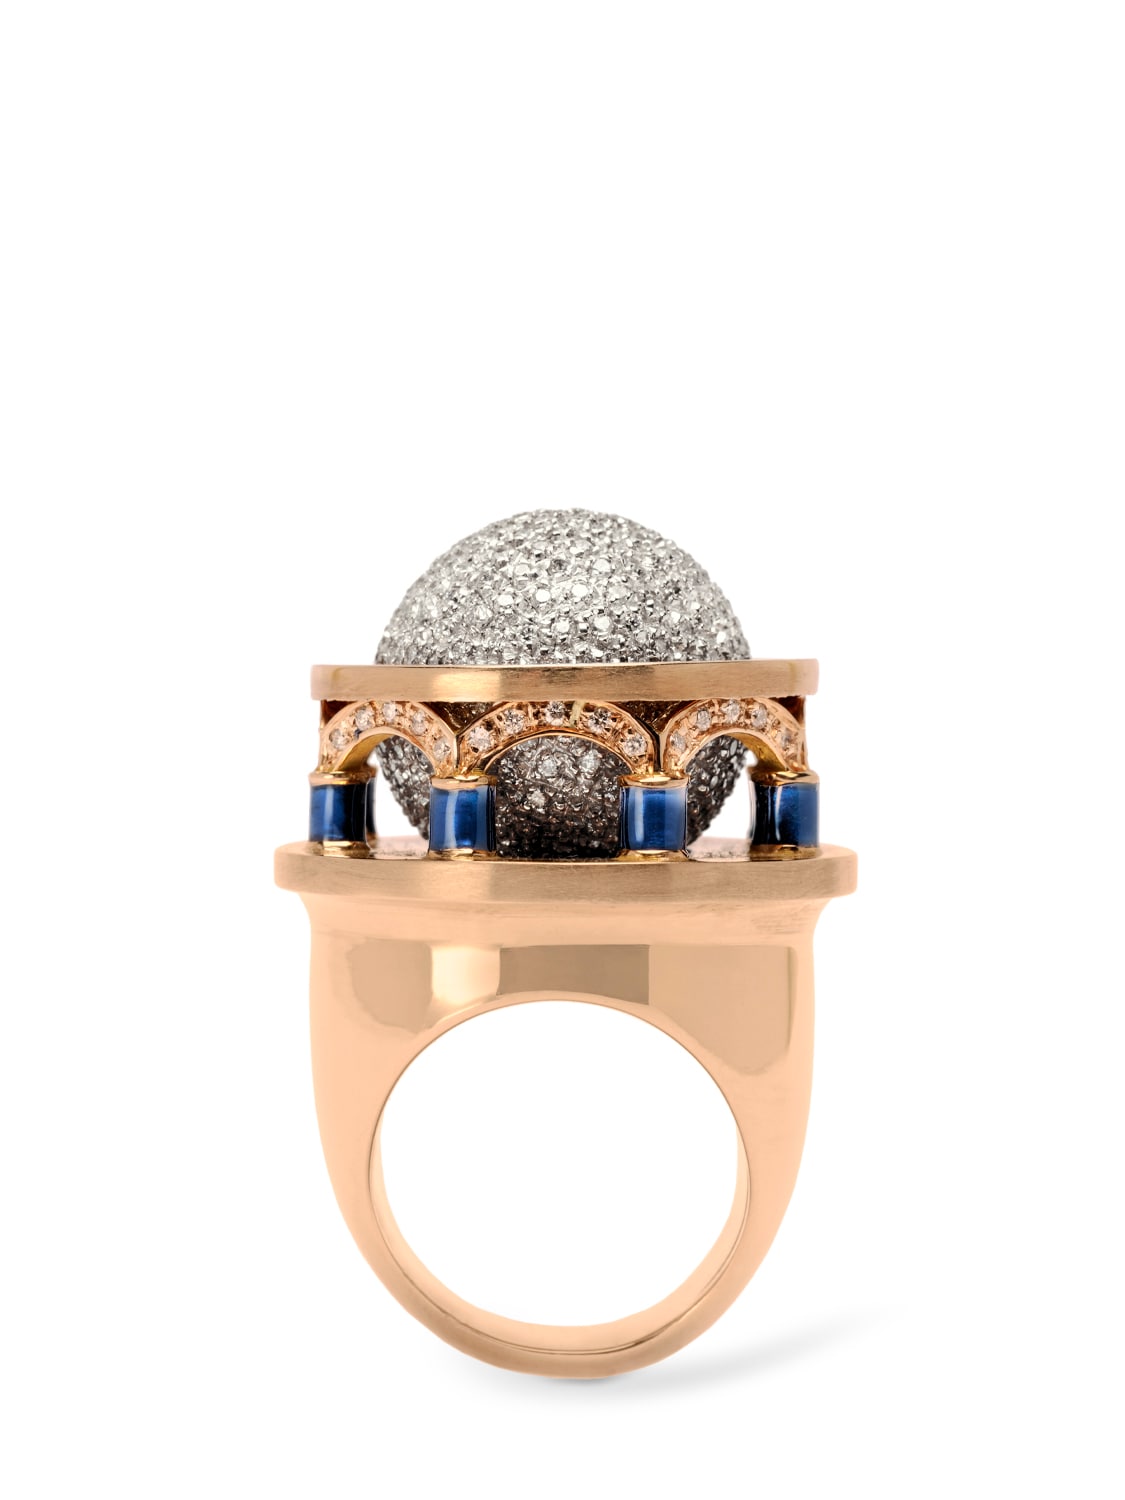 Luisaviaroma Girls Accessories Jewelry Rings Girl Ring 